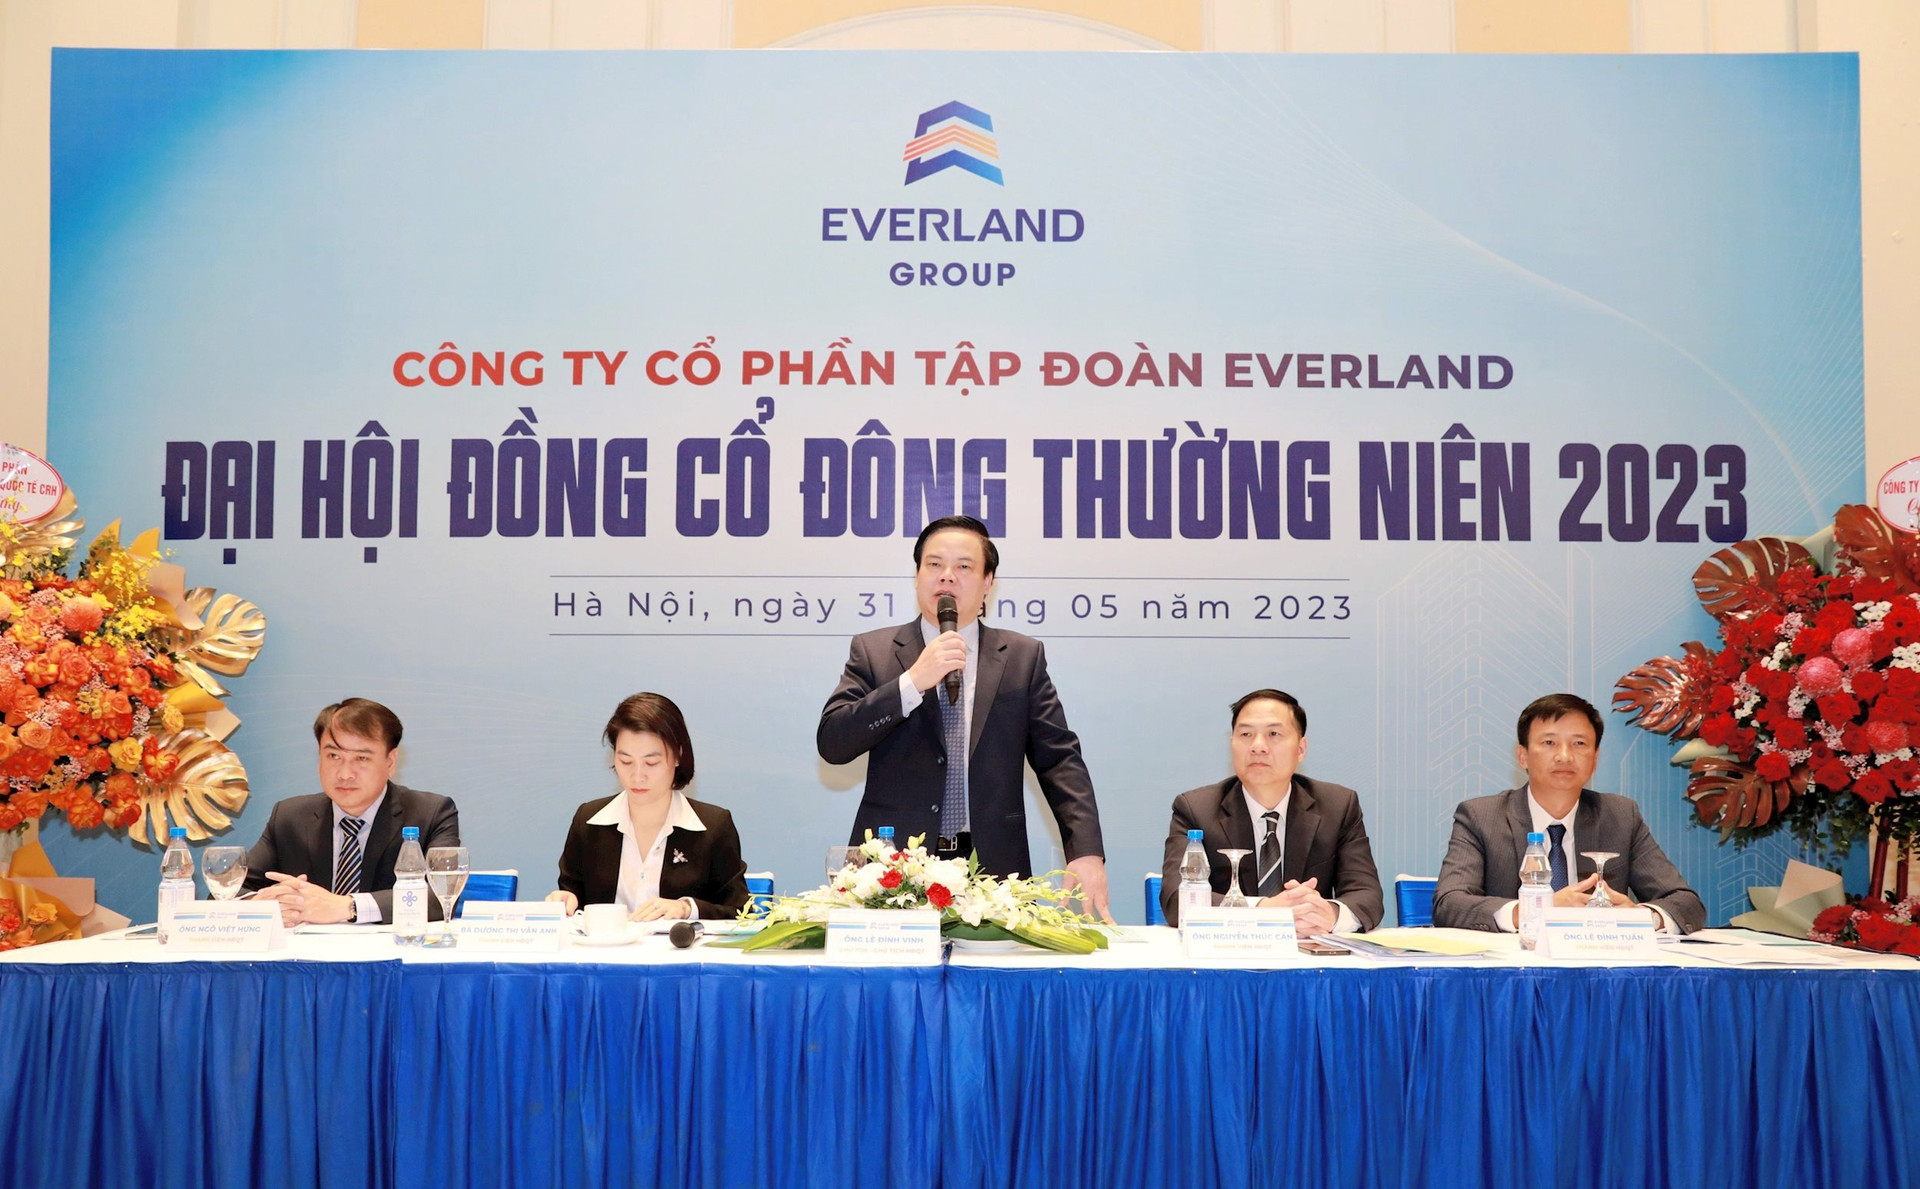 ĐHCĐ Everland (EVG): Đặt kế hoạch tăng vốn, đẩy mạnh triển khai loạt dự án lớn tại Vân Đồn, Lý Sơn... trong năm 2023